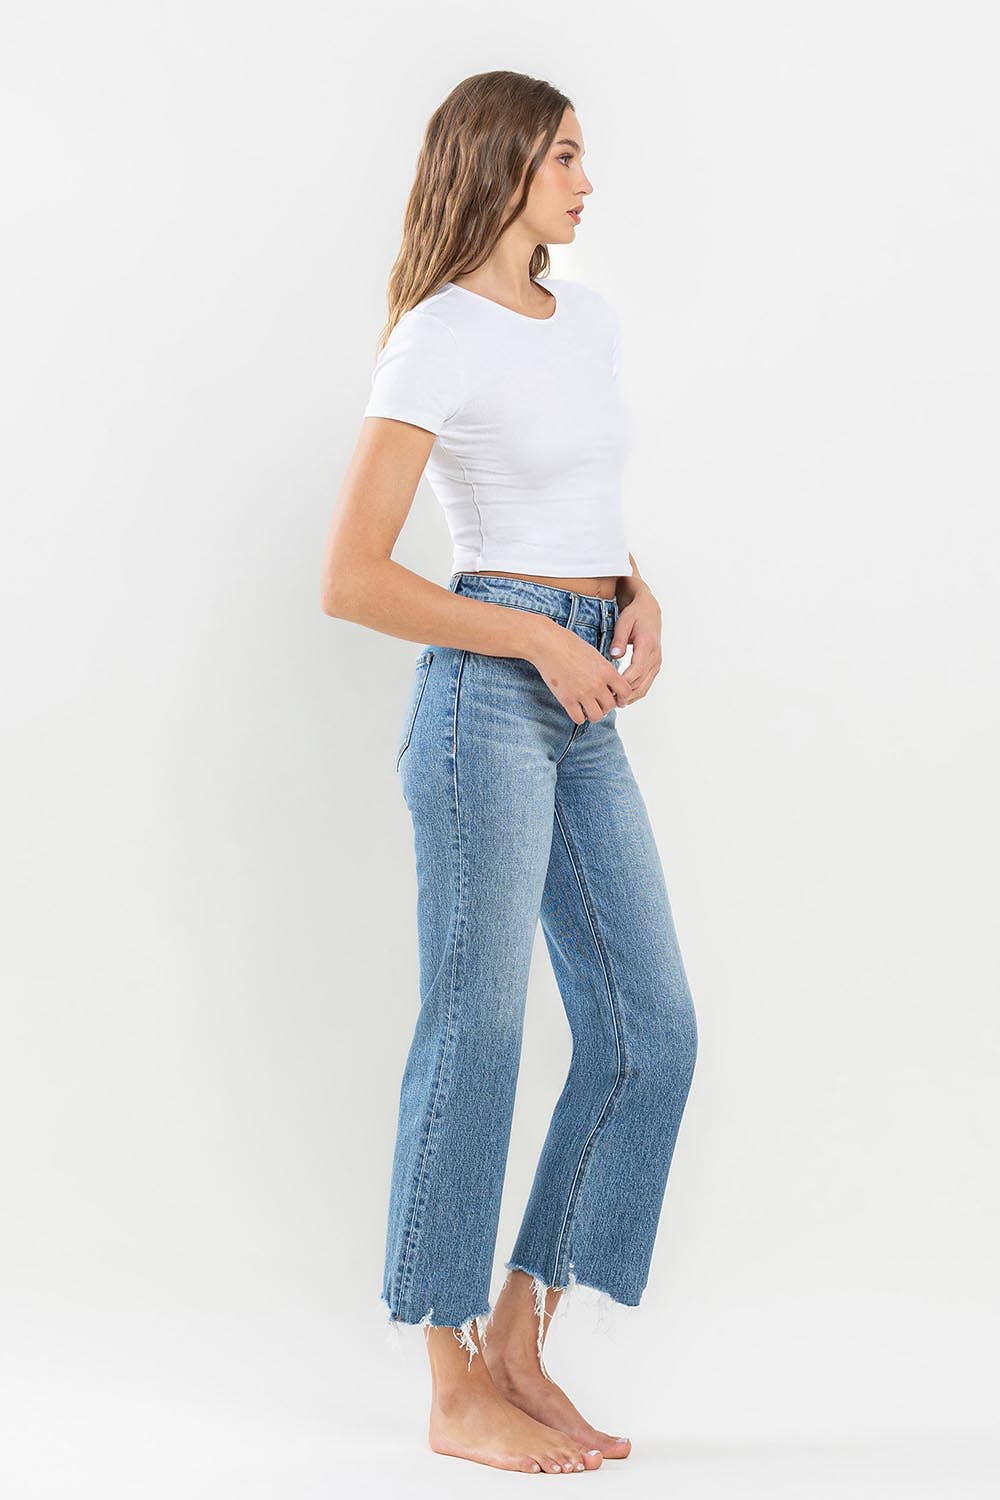 The Hannah Jeans